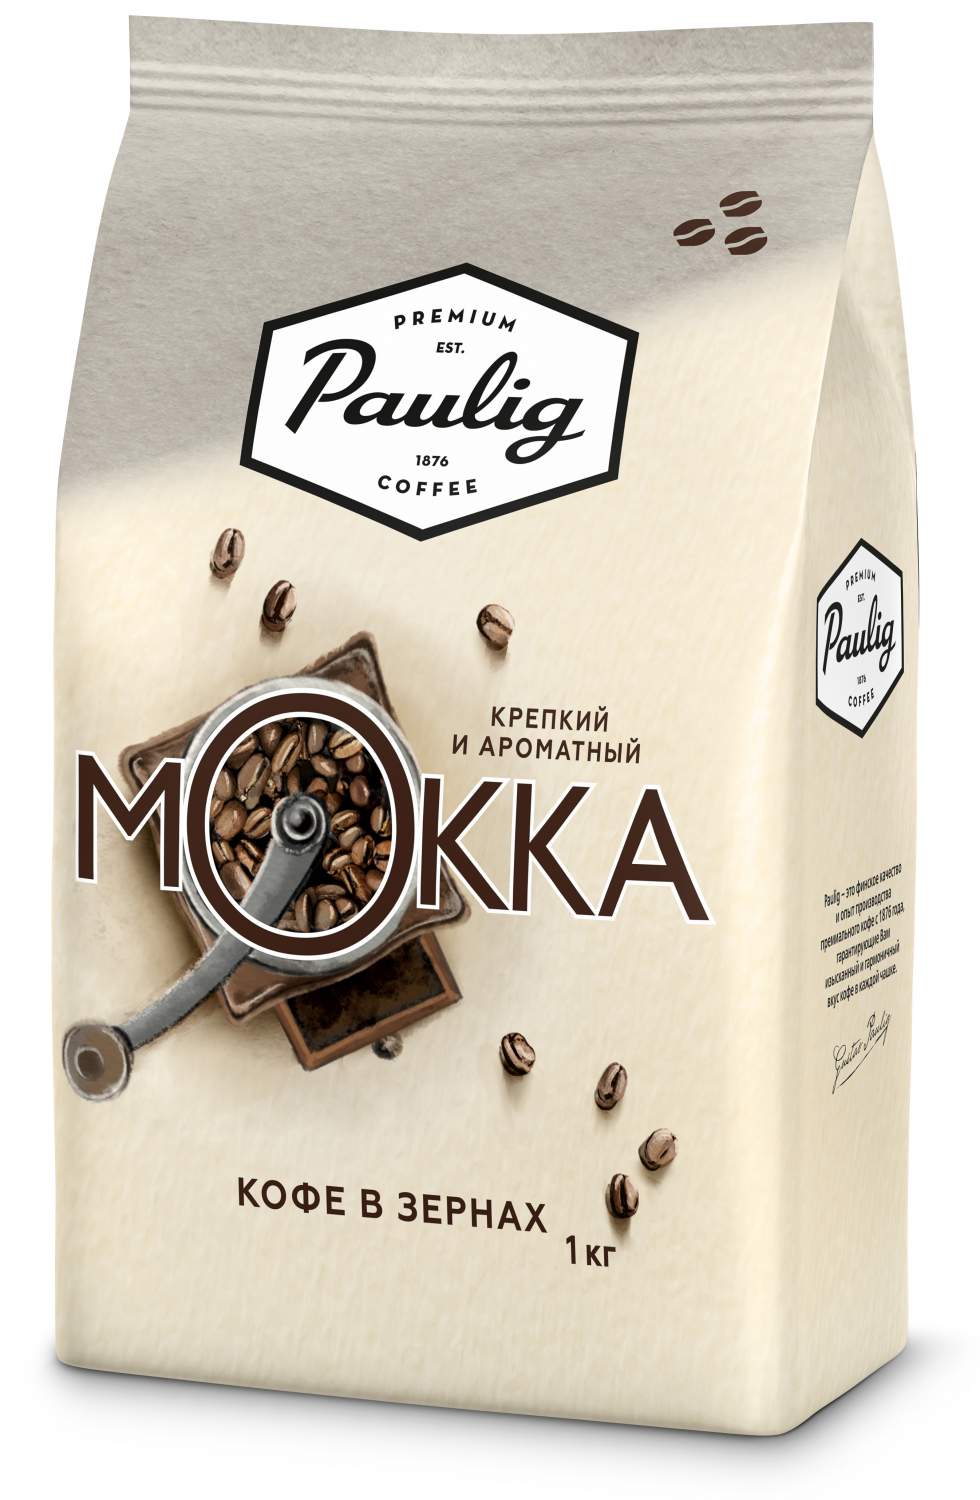 Уникальные особенности кофе мокко в зернах